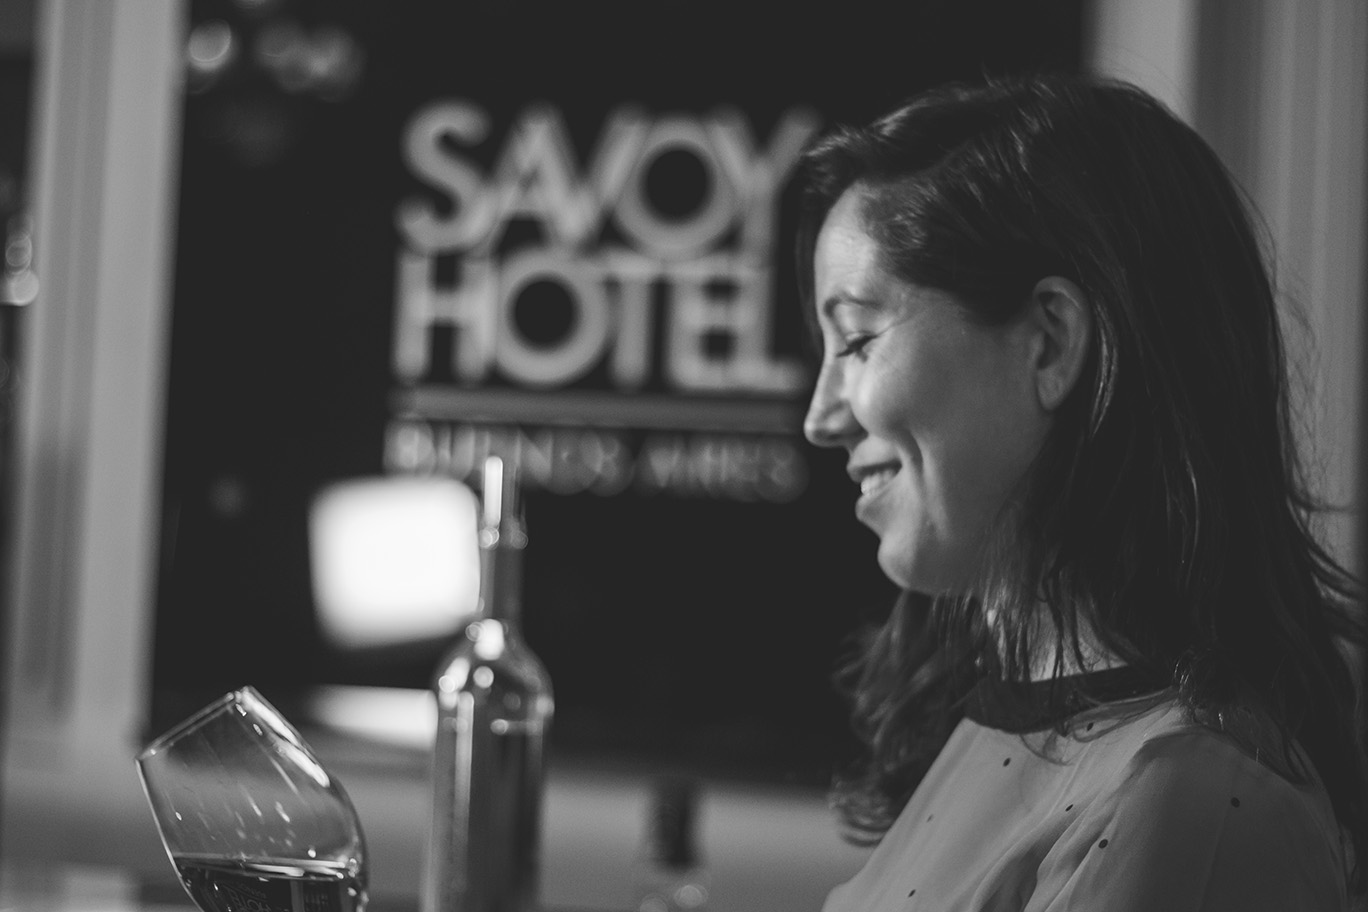 Wine tips, el color del vino, en el Savoy Hotel.